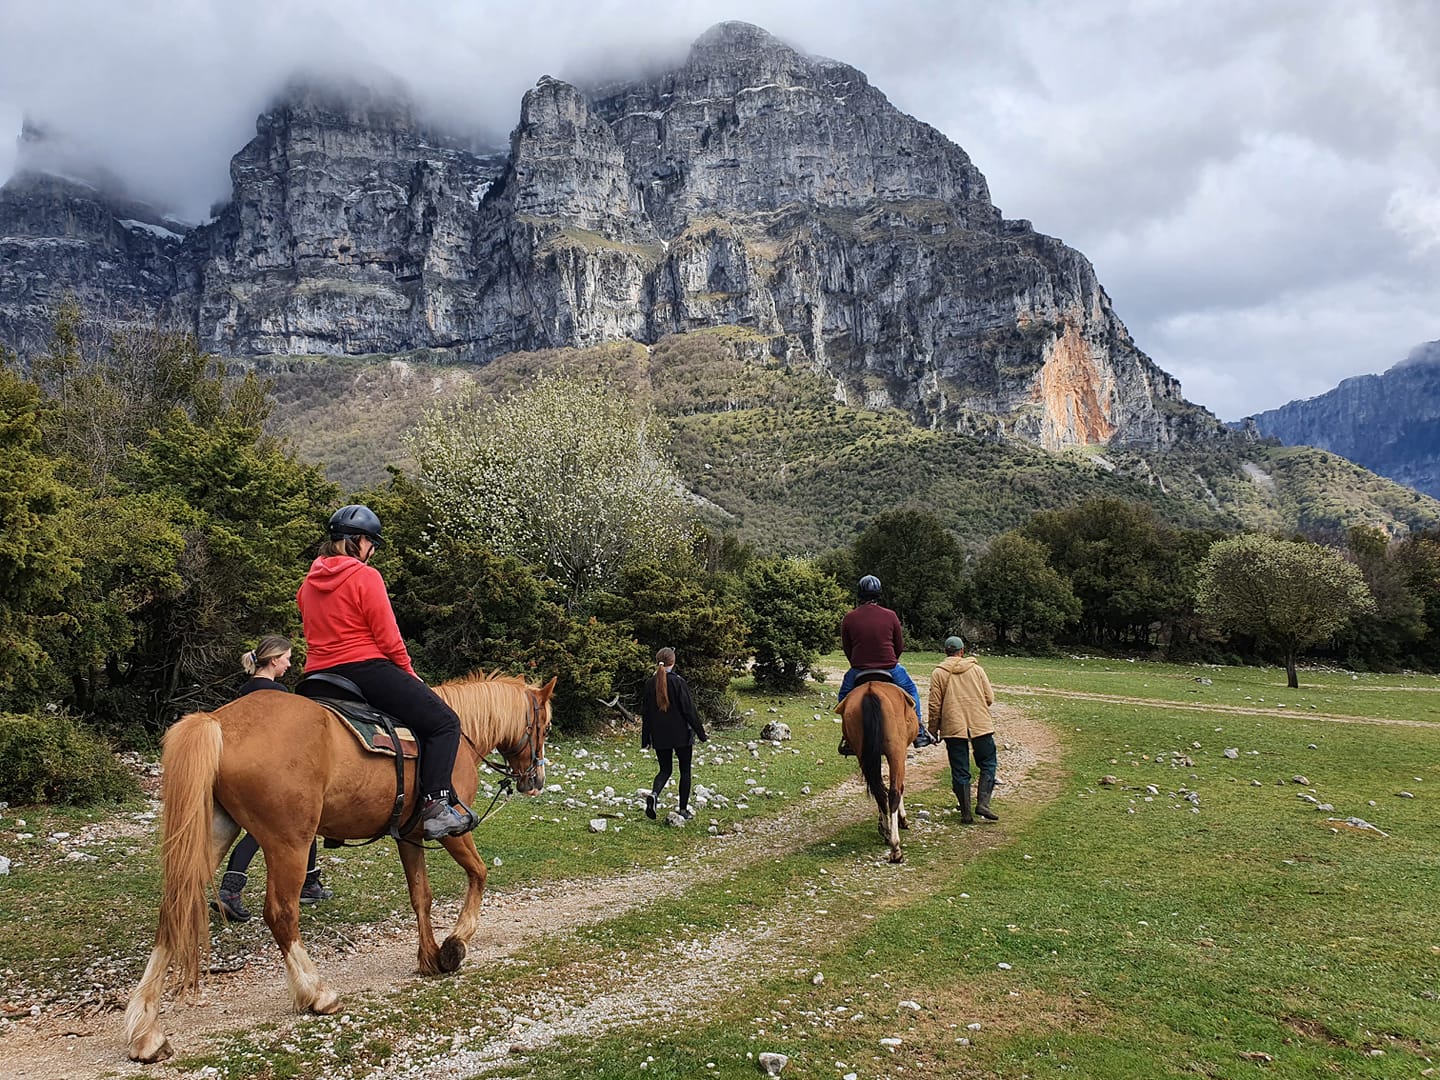 Βόλτα με άλογα στο Πάπιγκο